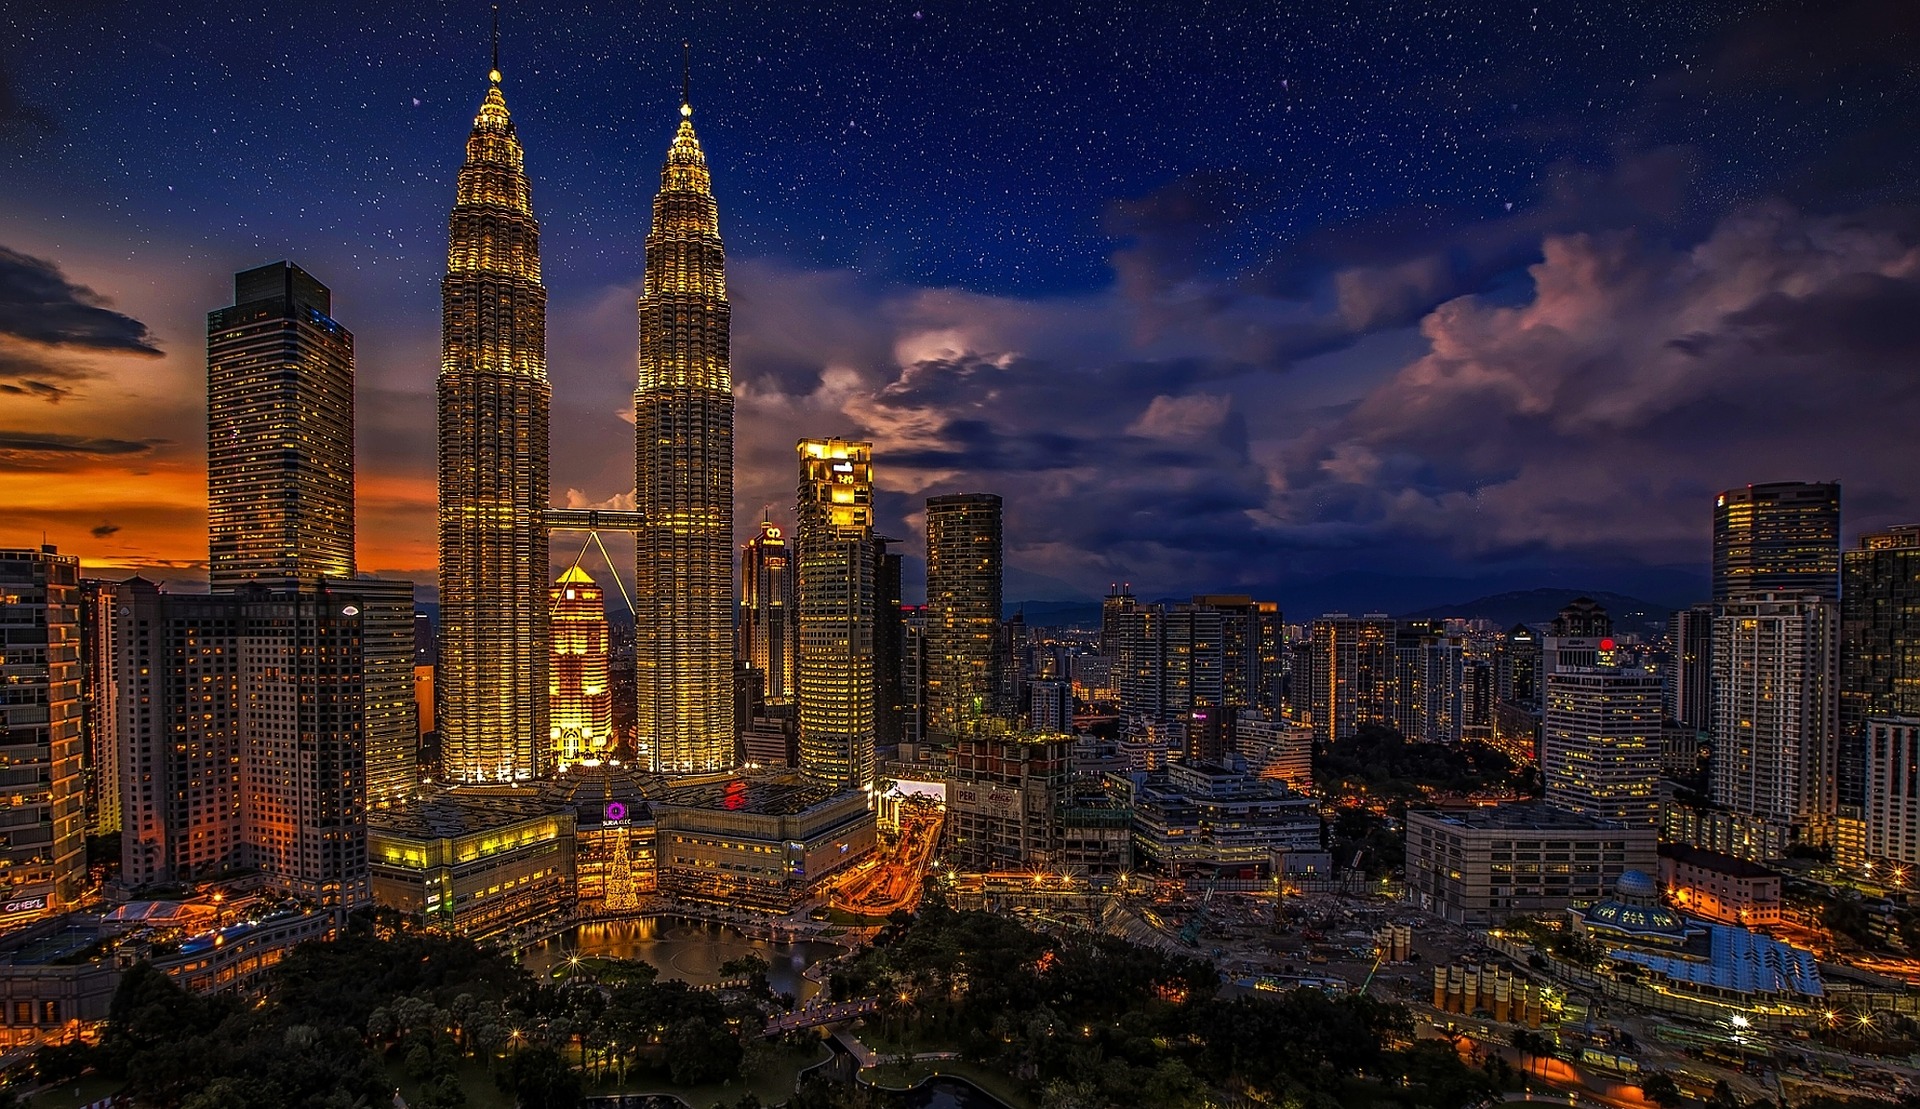 Die Petronas Towers in der Hauptsatdt Kuala Lumpur.